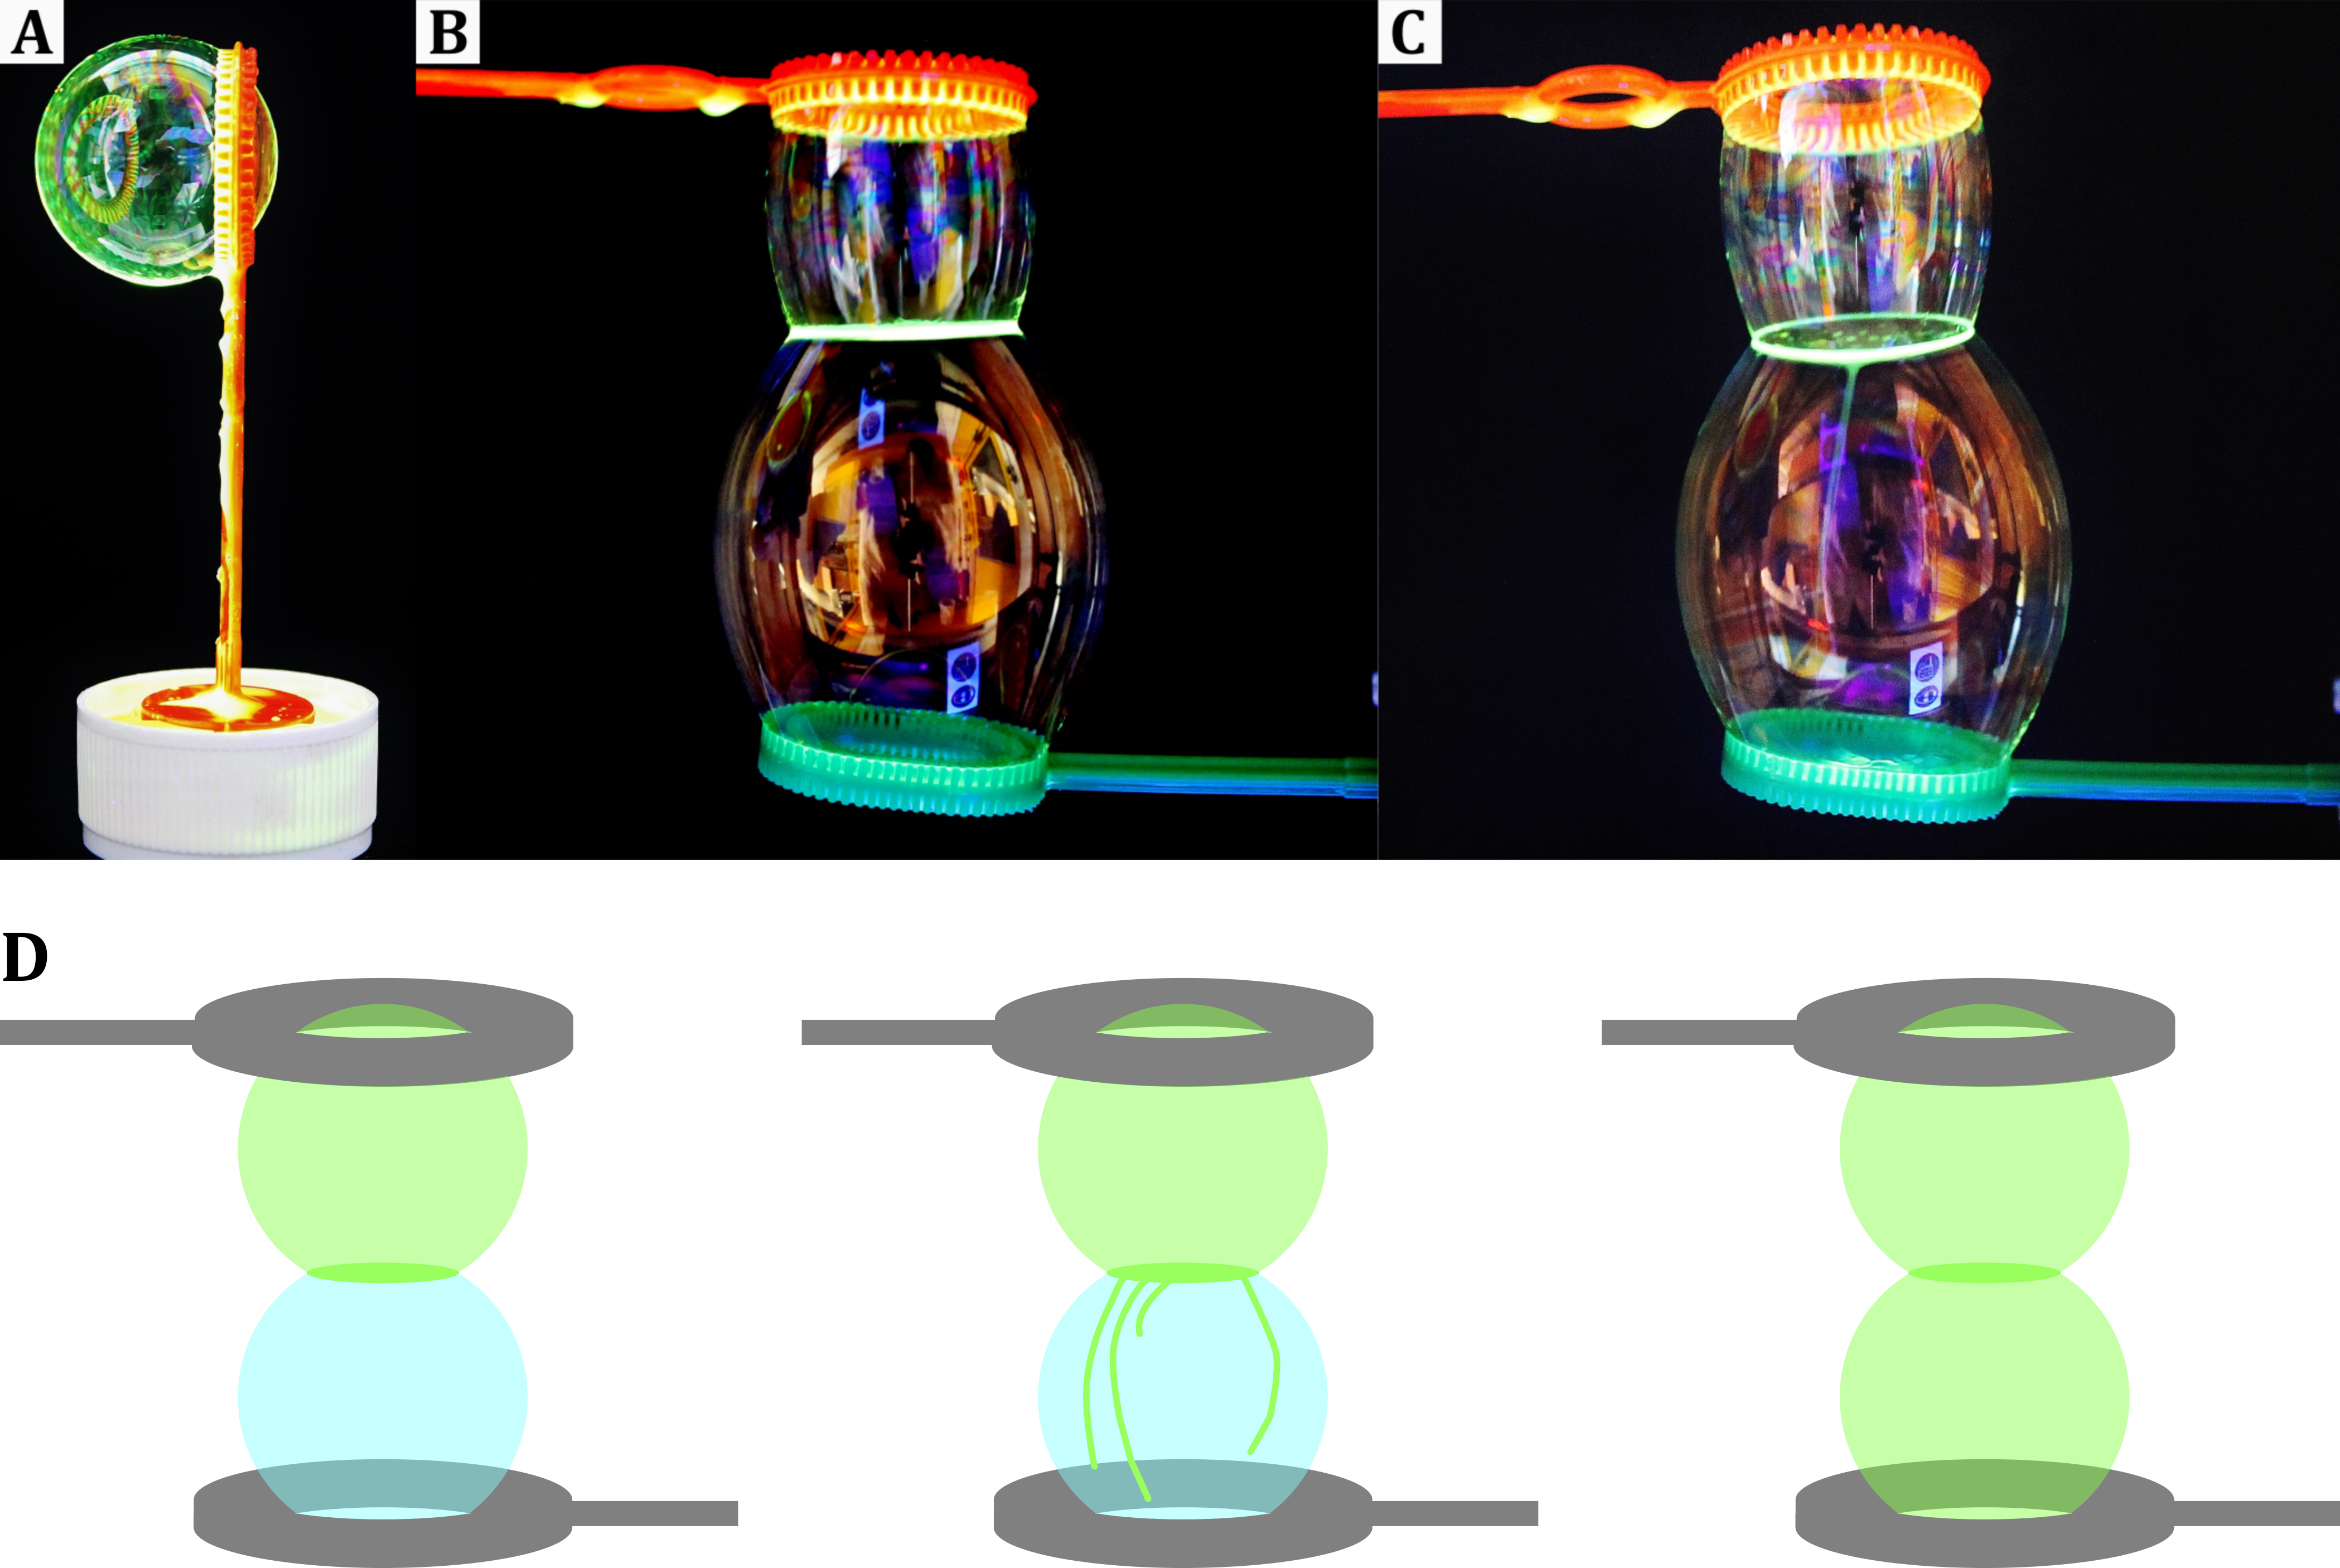 (A) Mit Pyranin versetze Seifenblase. (B) Beim Aufeinanderlegen zweier Seifenblasen, wird der fluoreszierende Farbstoff der oberen Seifenblase auf die untere Seifenblase übertragen (C). Aufgrund der schlechten Sichtbarkeit der Fluoreszenz auf Fotografien zeigt (D) eine schematische Darstellung der beschrieben Ereignisse.